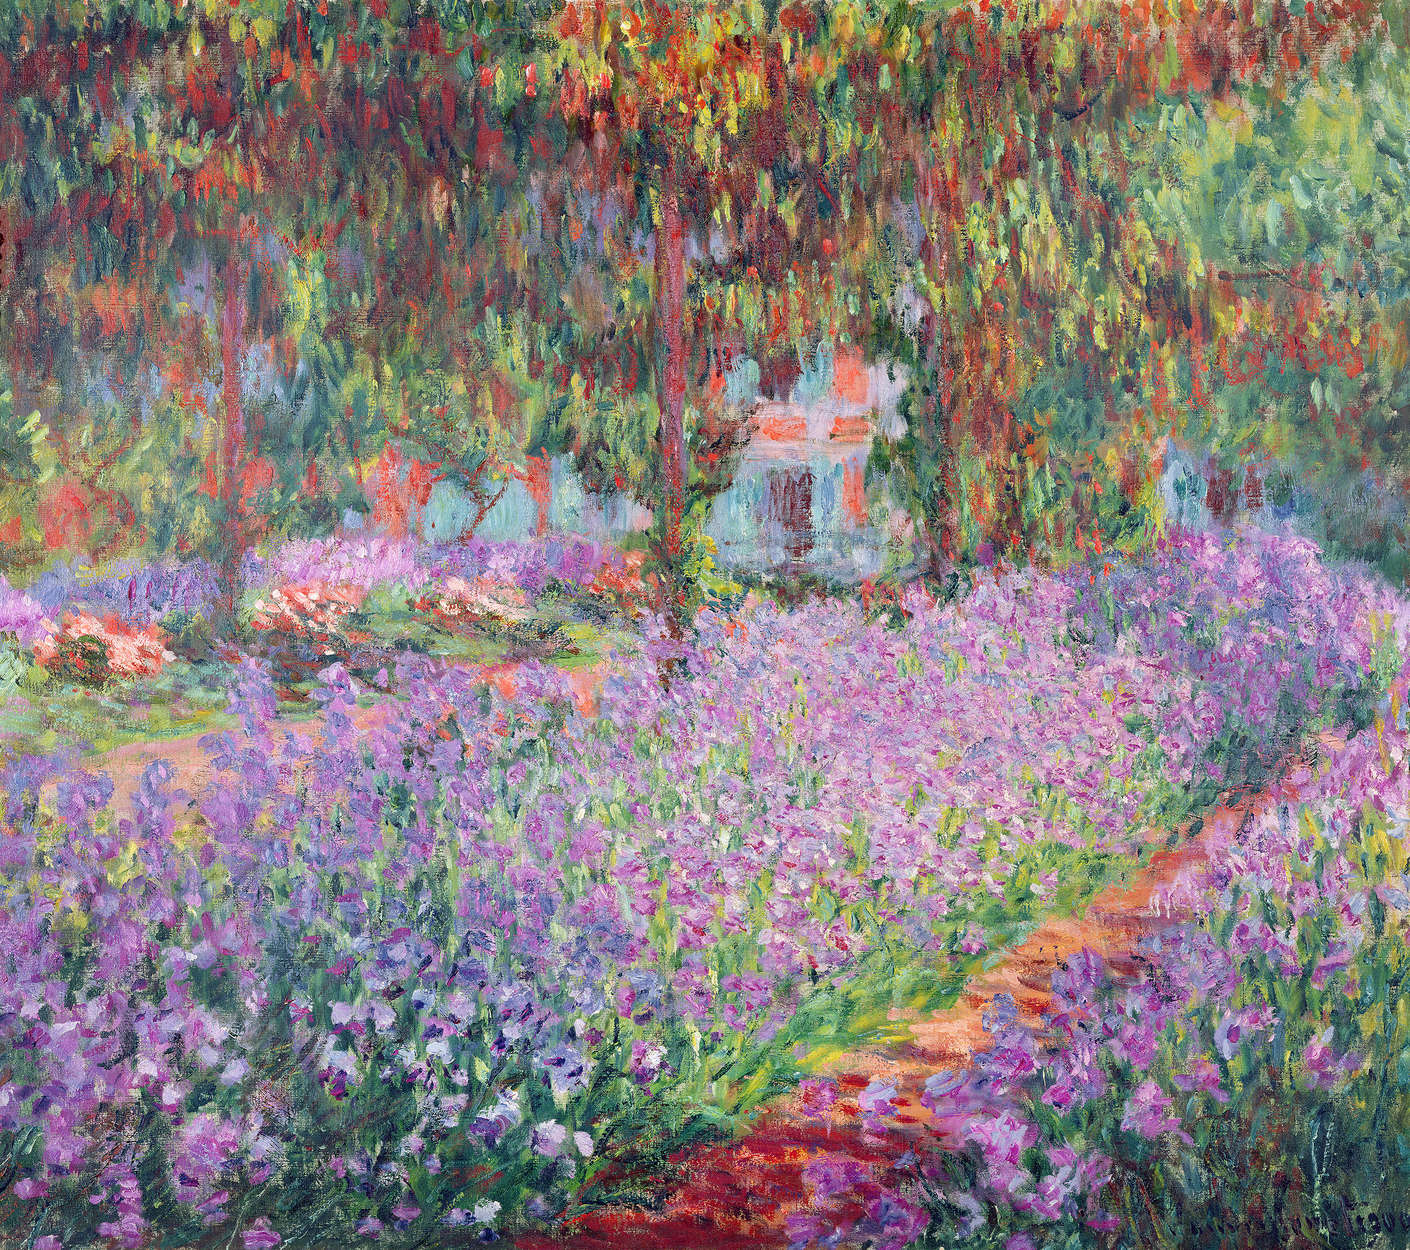             Muurschildering "De tuin van de kunstenaar in Giverny" van Claude Monet
        